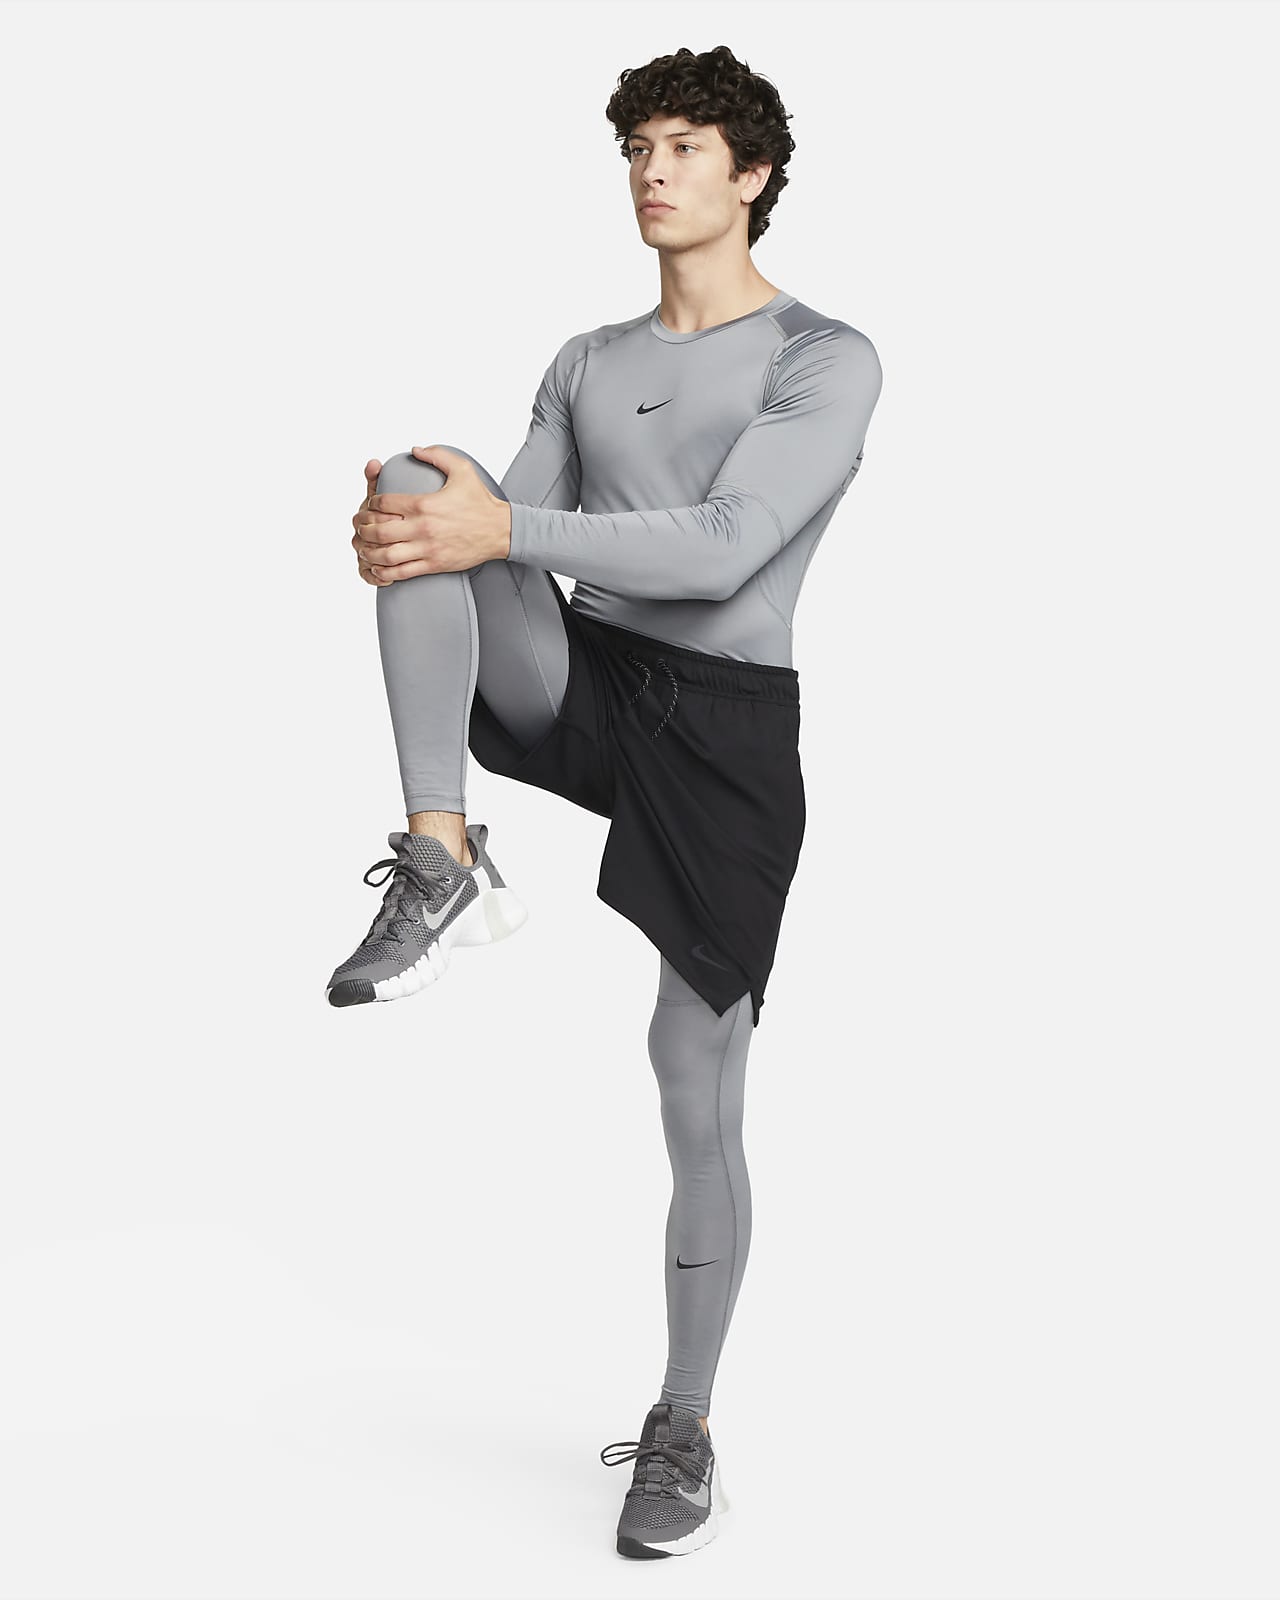 Haut de fitness à manches longues et col montant Dri-FIT Nike Pro pour homme.  Nike LU